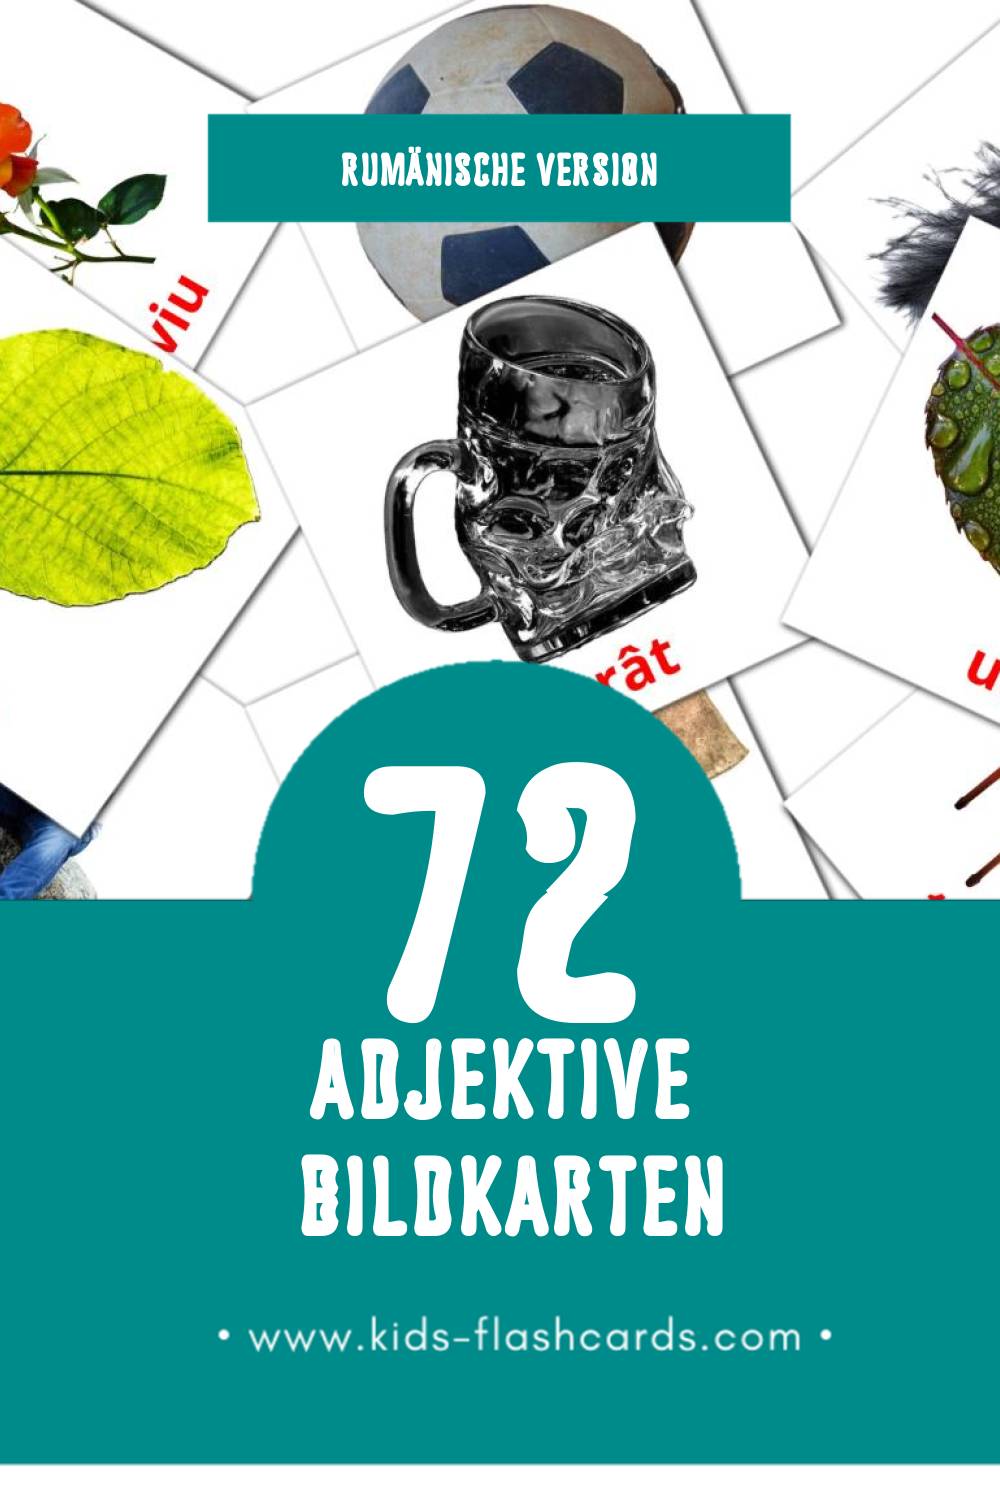 Visual Adjective  Flashcards für Kleinkinder (72 Karten in Rumänisch)